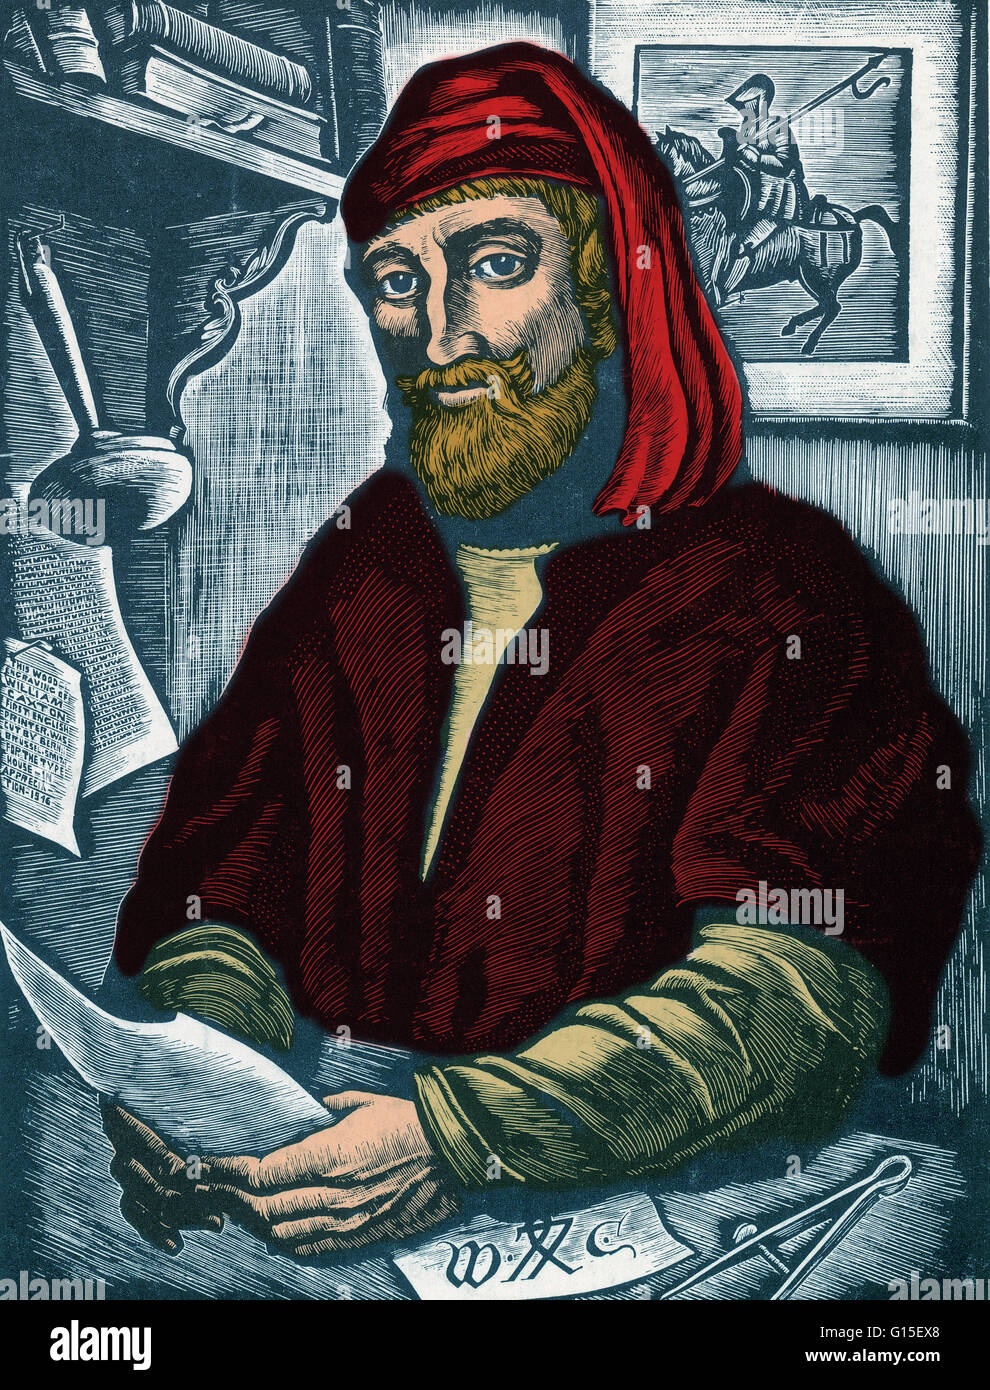 Einem Holzstich von William Caxton des amerikanischen Künstlers Bernard Brussel-Smith (1914-1989). William Caxton (1422?-1492) war ein englischer Kaufmann, Diplomat, Schriftsteller und Drucker. Soweit bekannt ist, war er der erste englische als einen Drucker und die fi Stockfoto